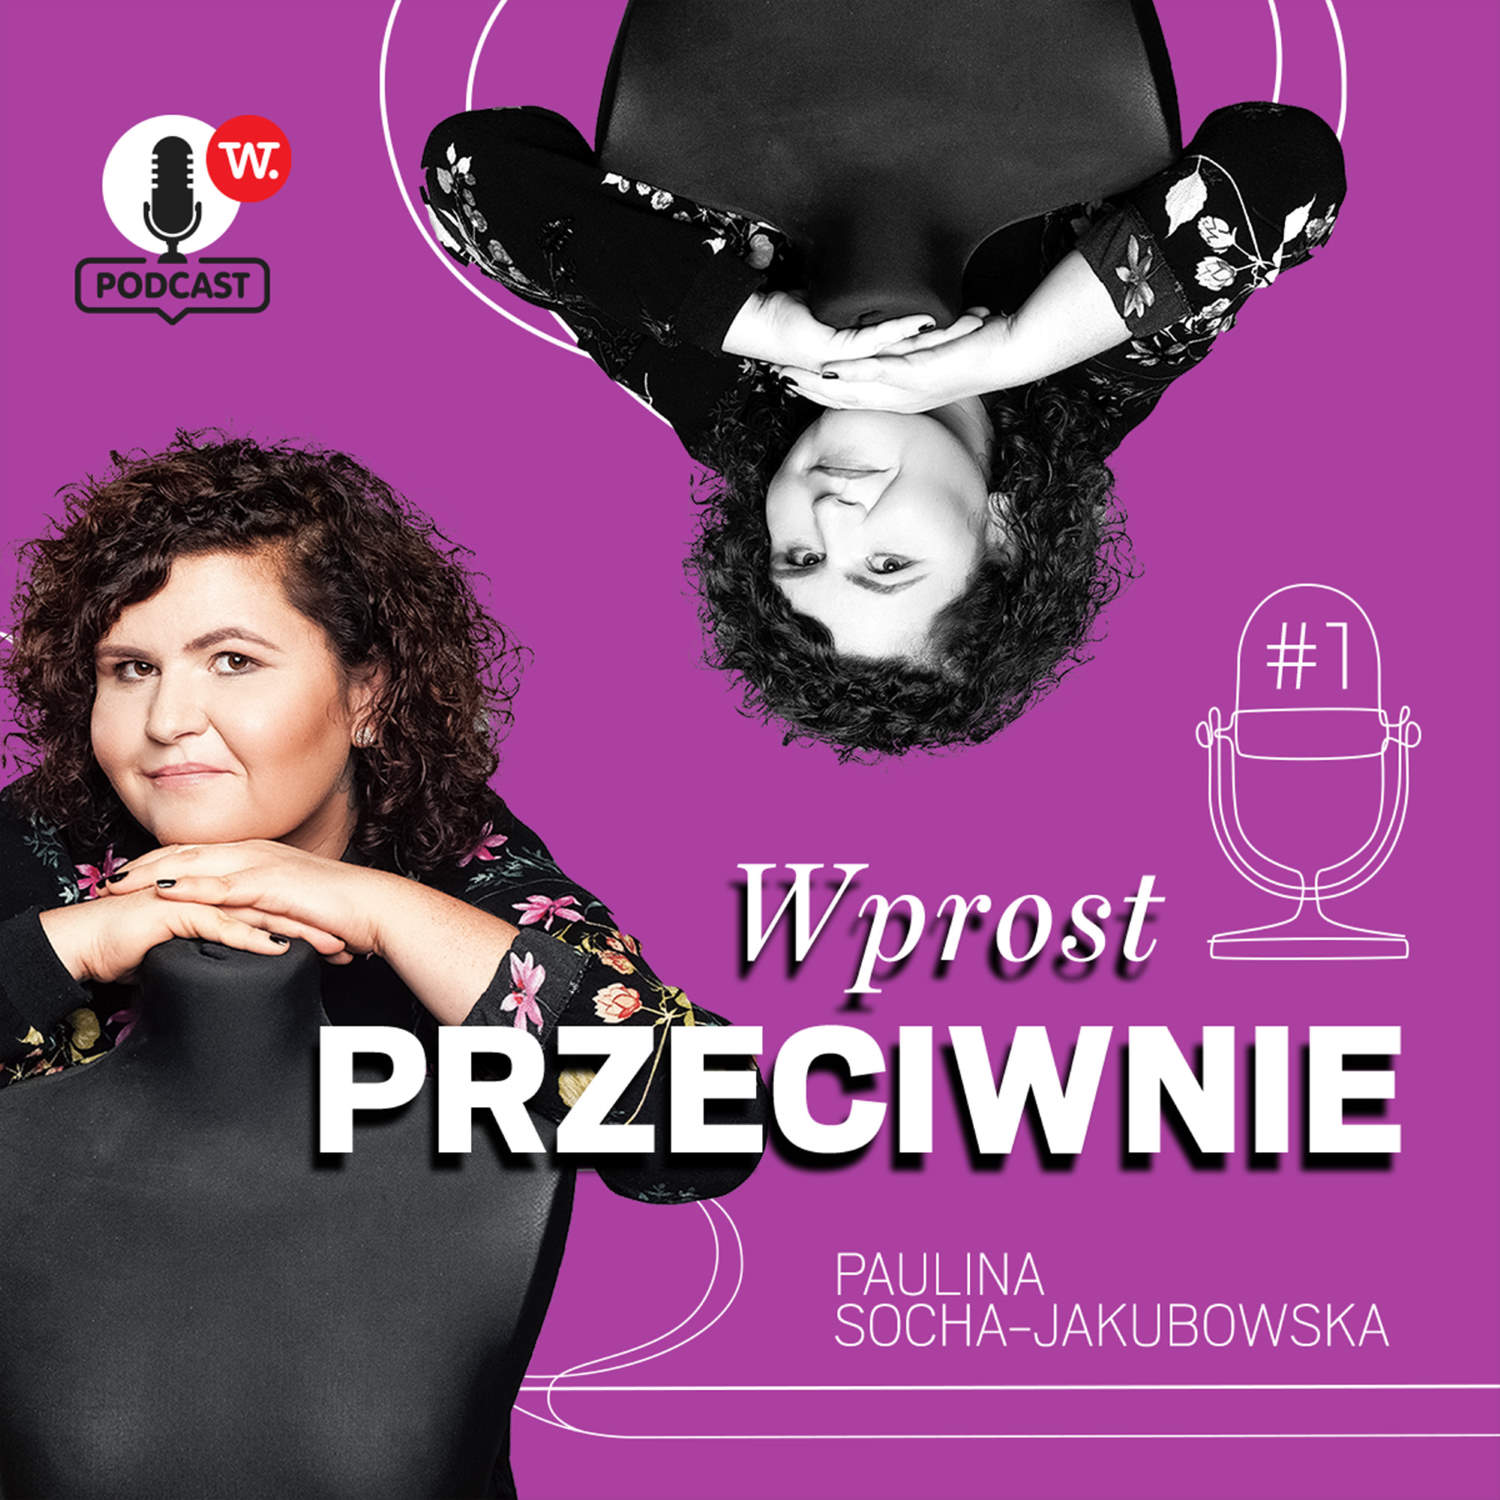 Majka Jeżowska: Wojtek Młynarski powiedział, że jestem największym zmarnowanym polskim talentem